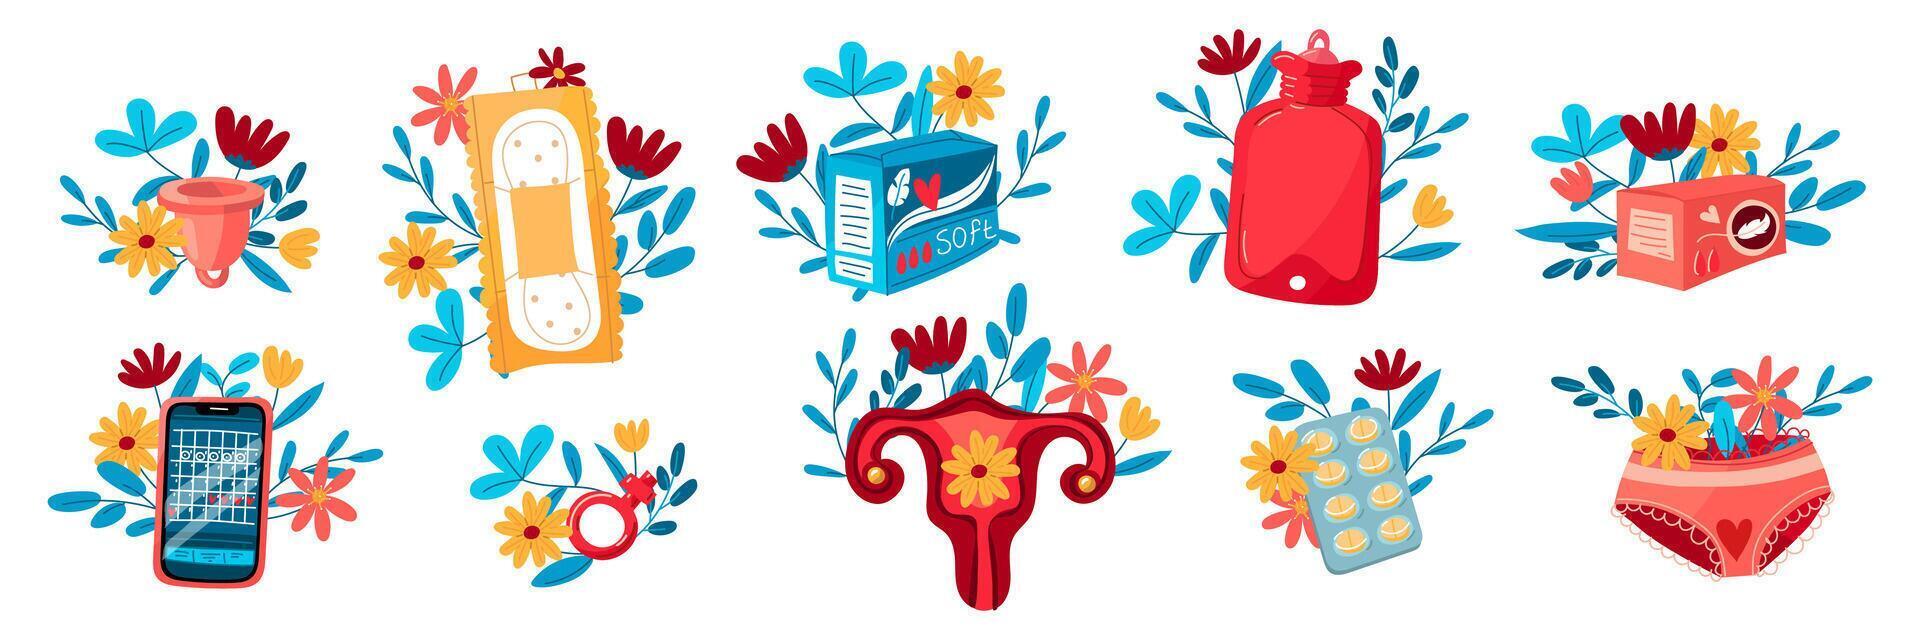 uma conjunto do útero, almofadas, menstrual xícara, pílulas, telefone, calcinhas com flores a conceito do uma mulher regular menstrual ciclo. menstrual período, menstruação, pré-menstrual síndrome, vetor do ovários